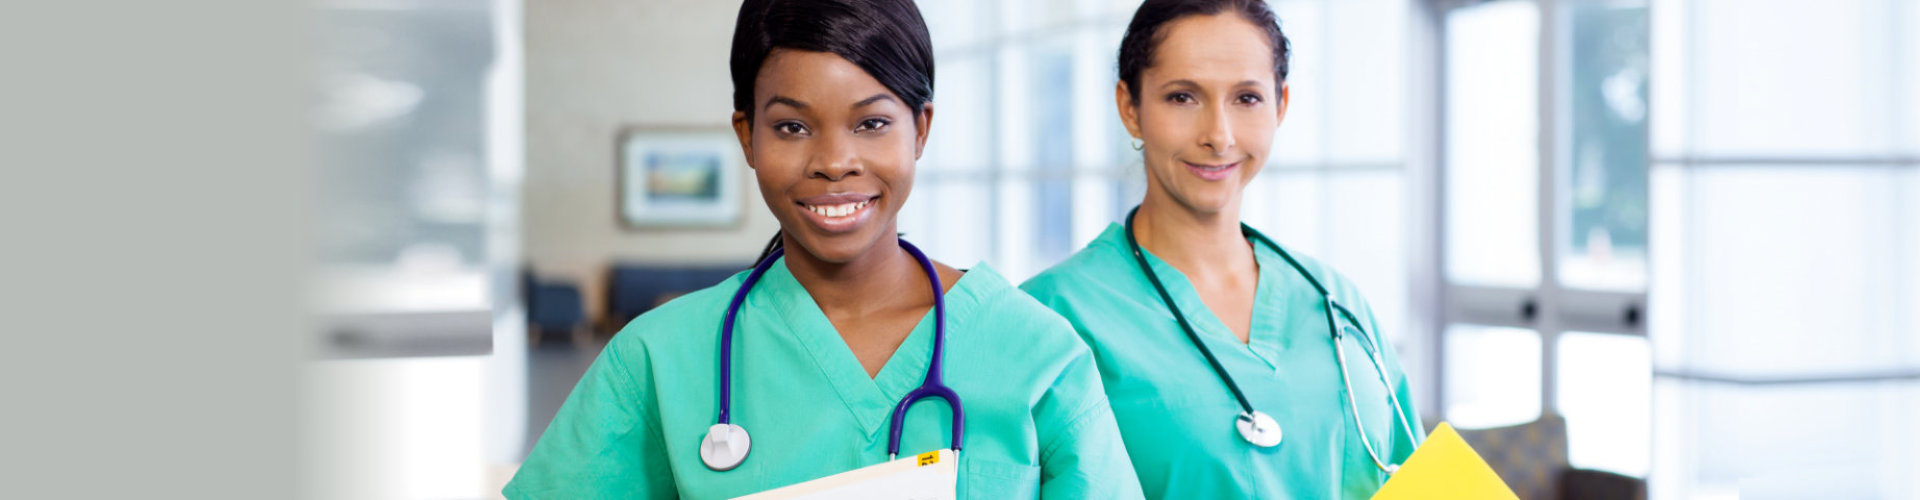 female nurses wearing stethoscopes smiling